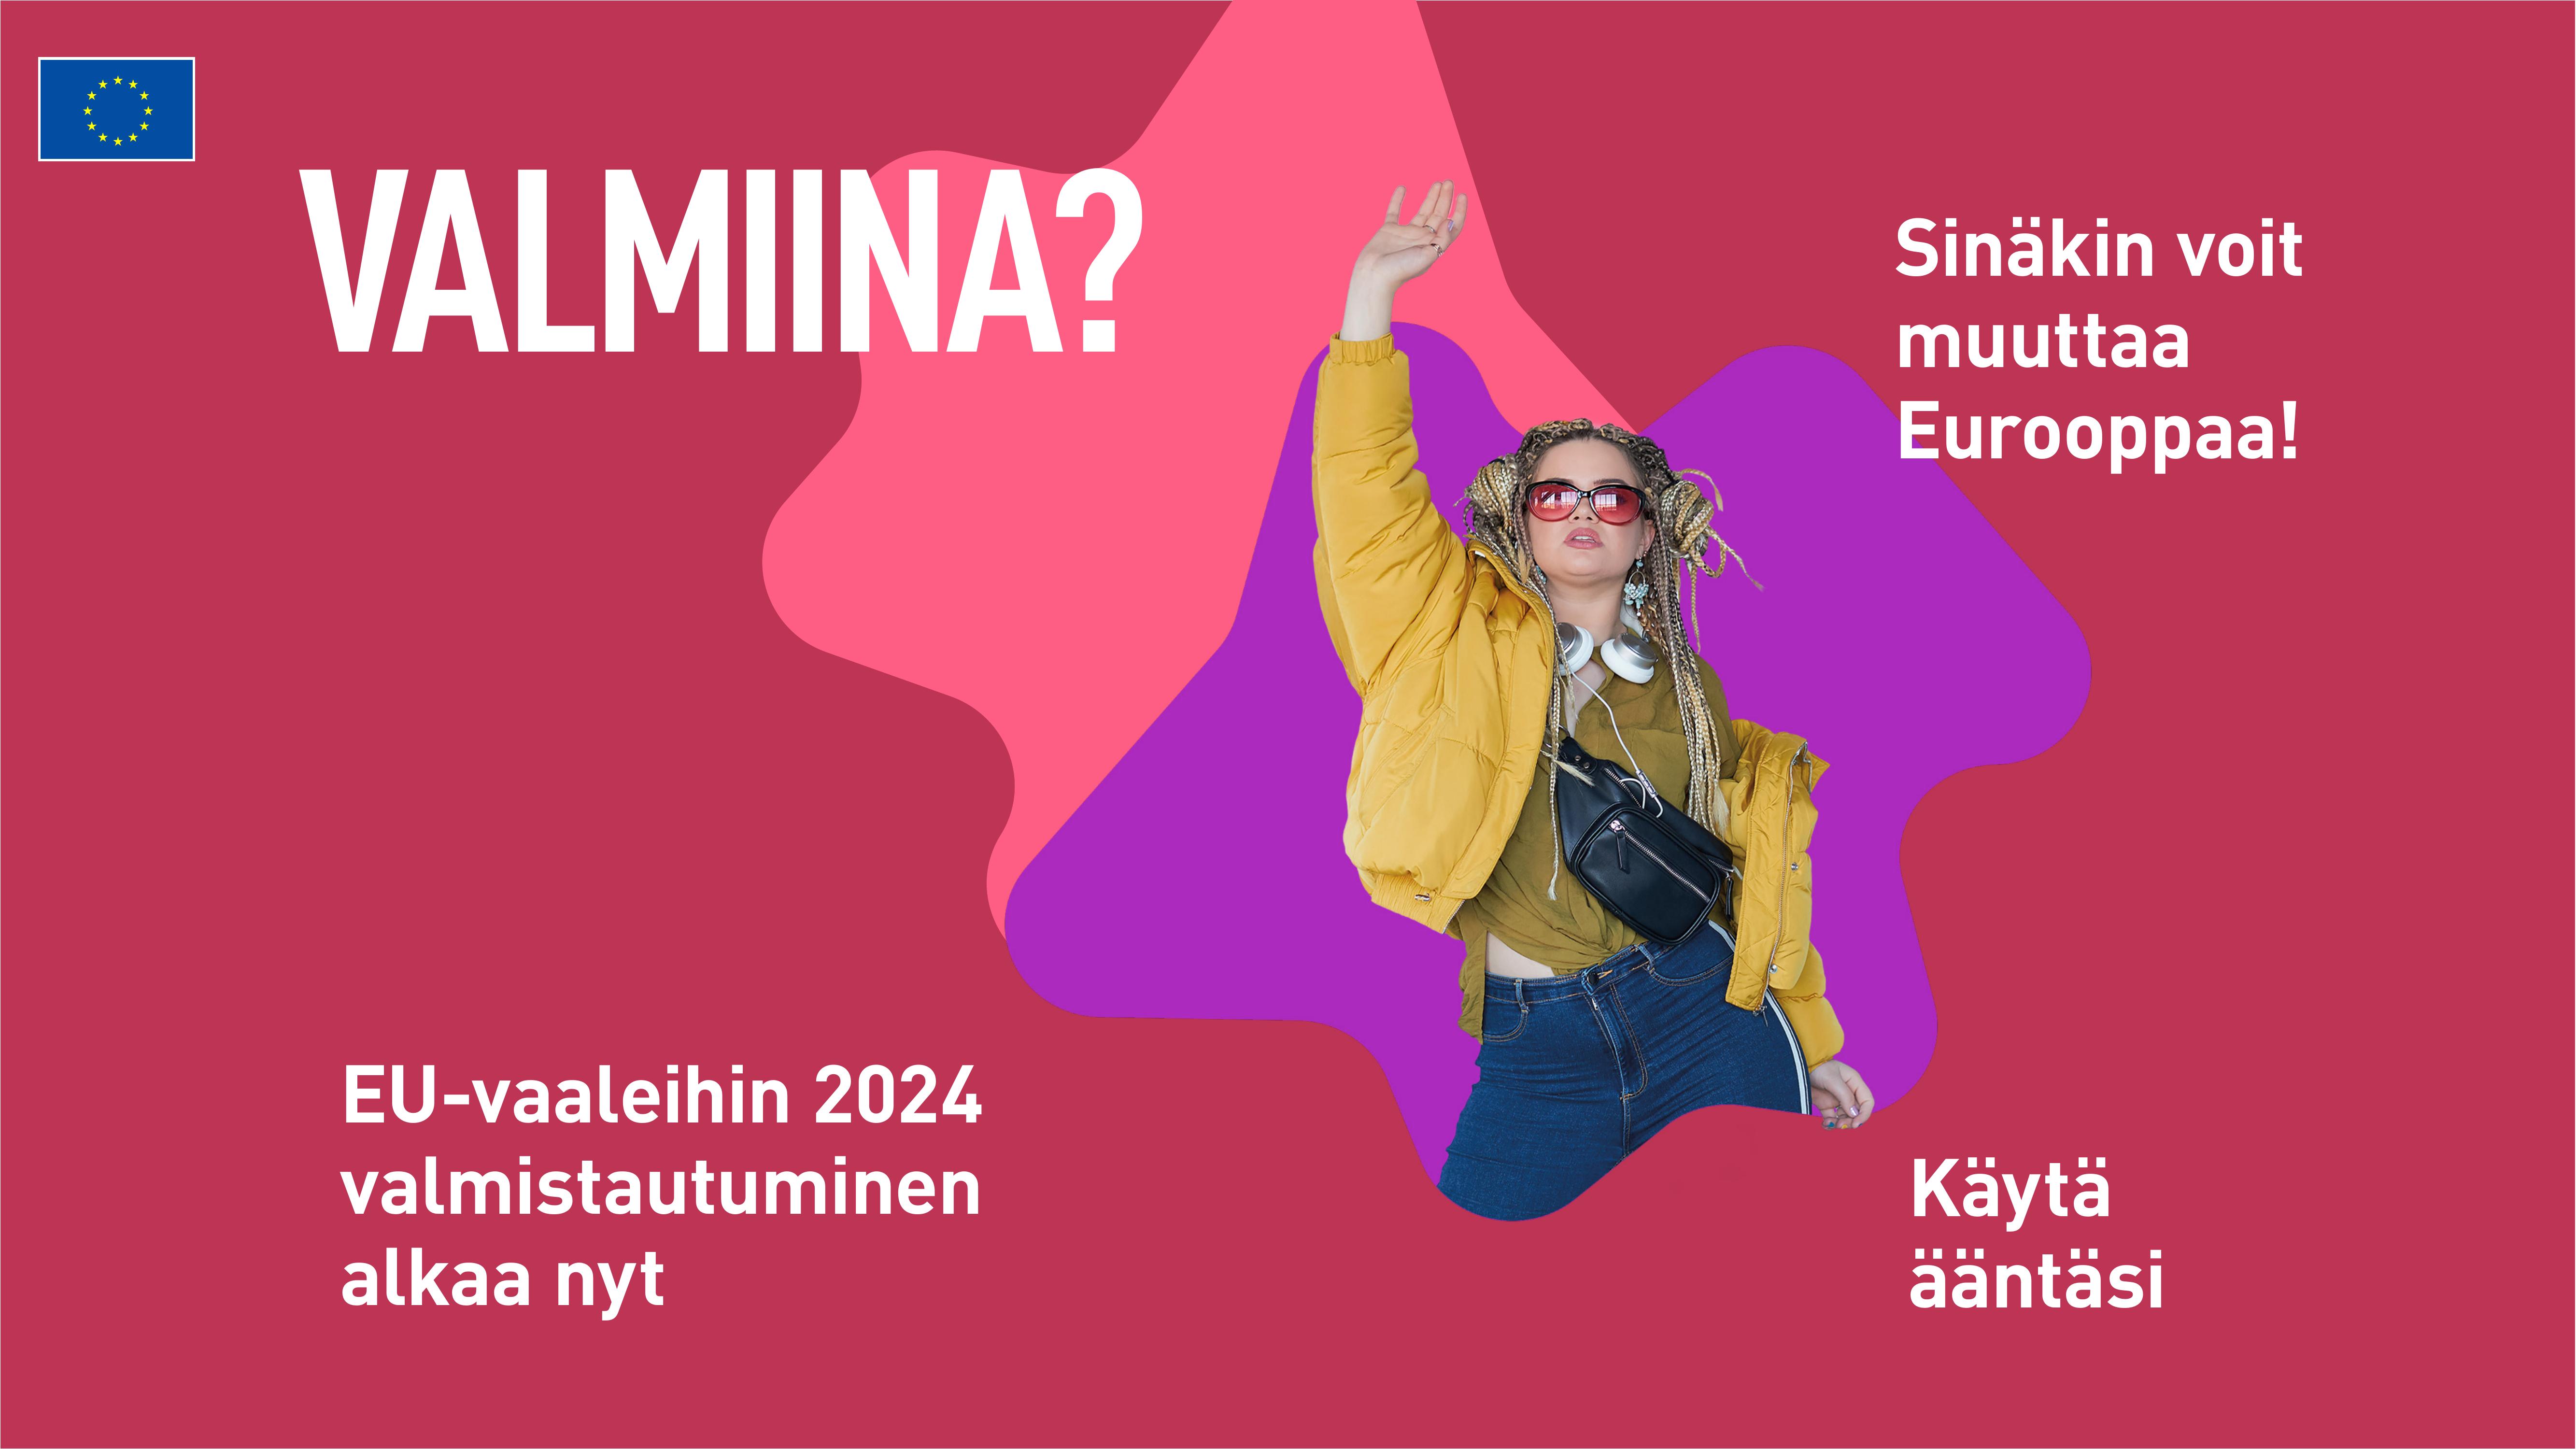 valmina eu-vaaleihin 2024 valmistautuminen alkaa-FI.pdf